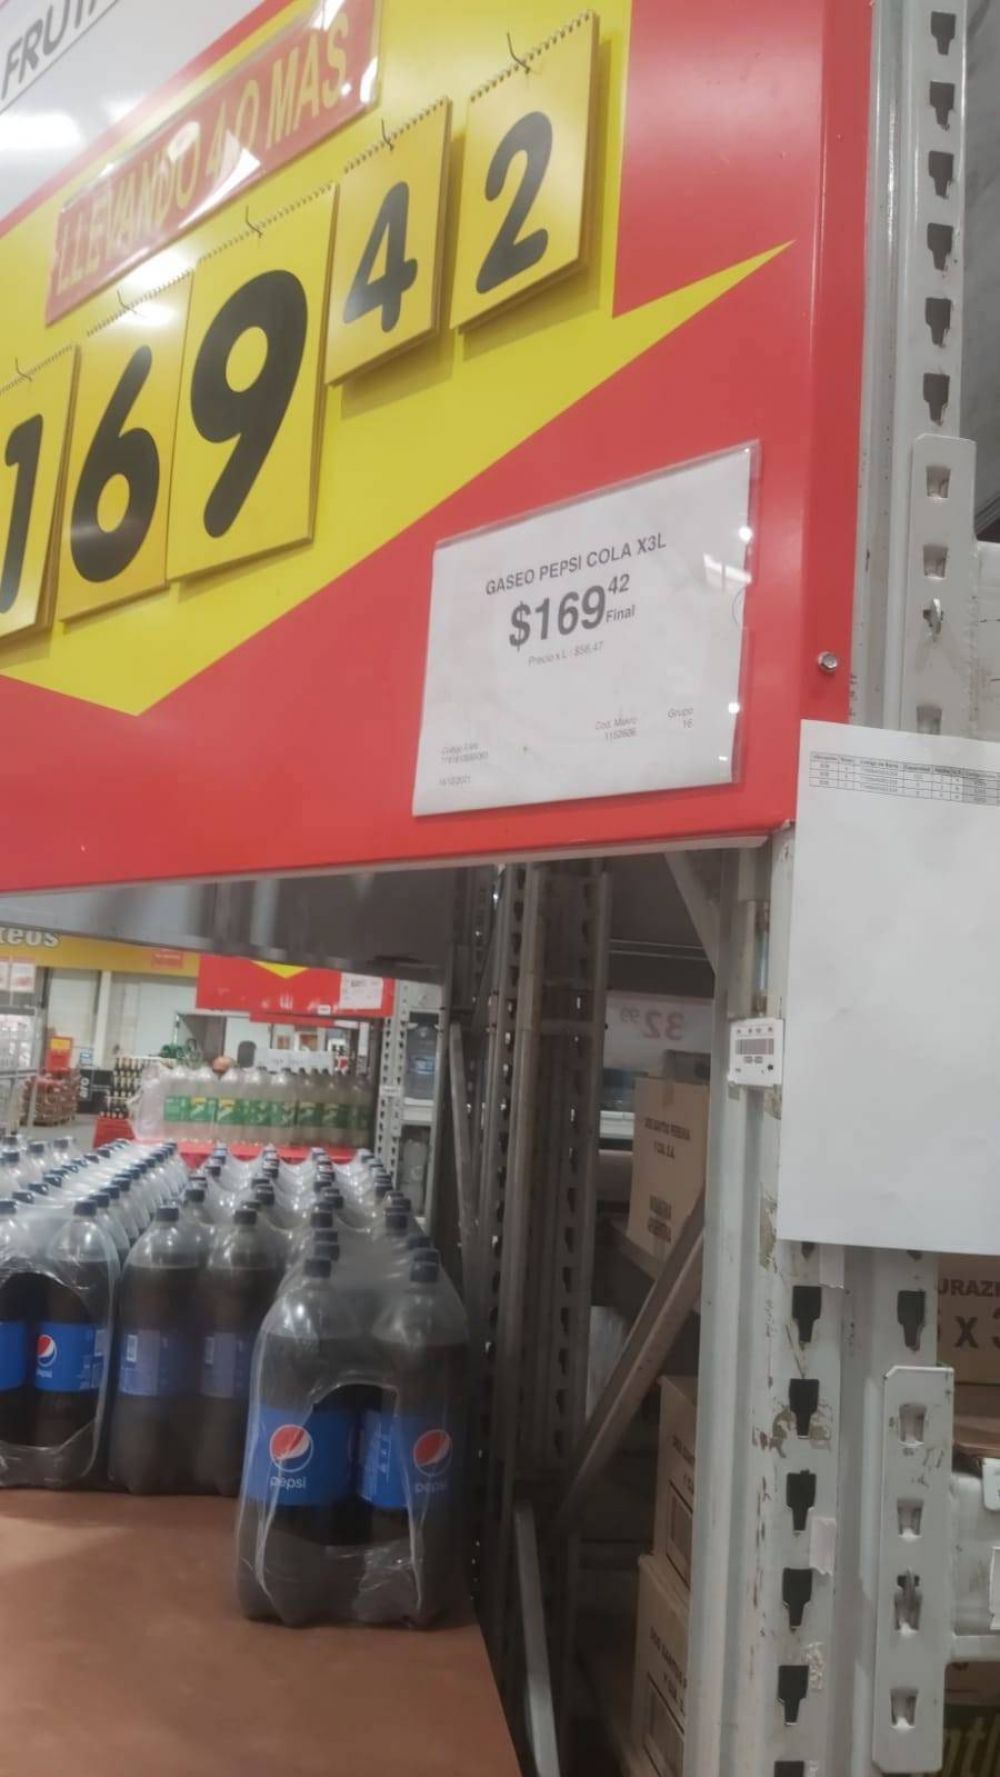 Advierten trampa con precios en las gndolas de algunos supermercados